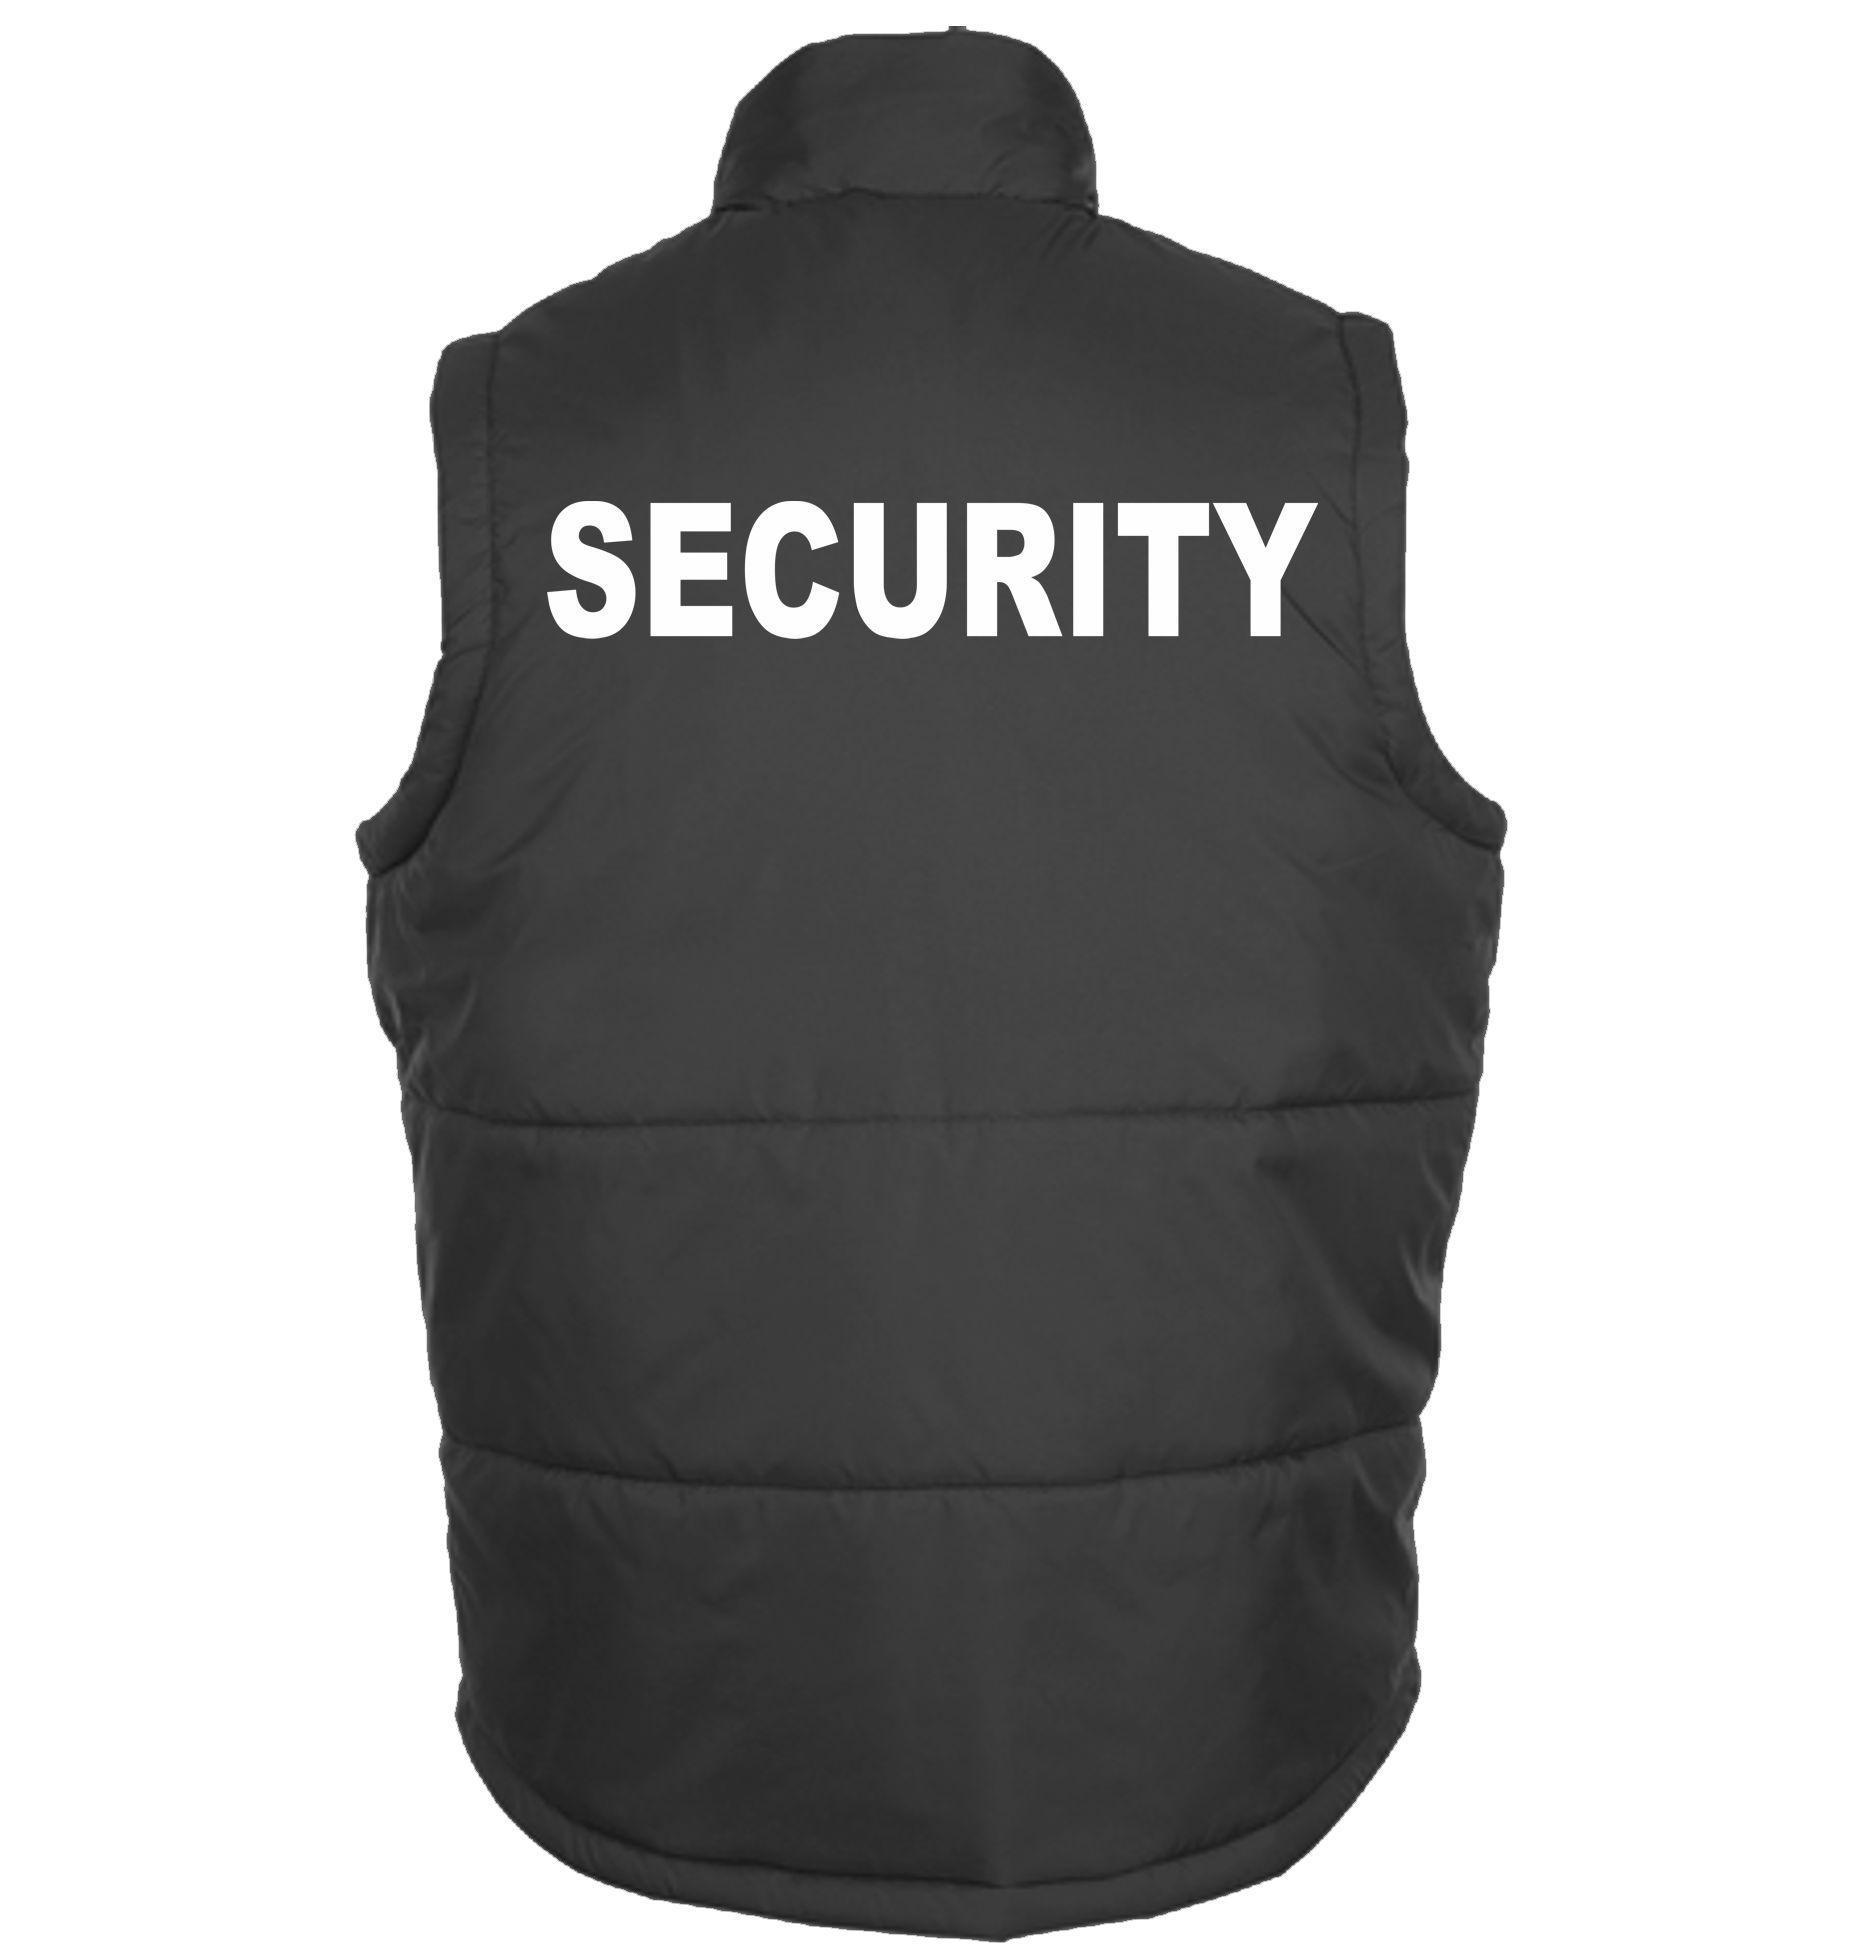 Security-Weste-Bodywarmer, Herren